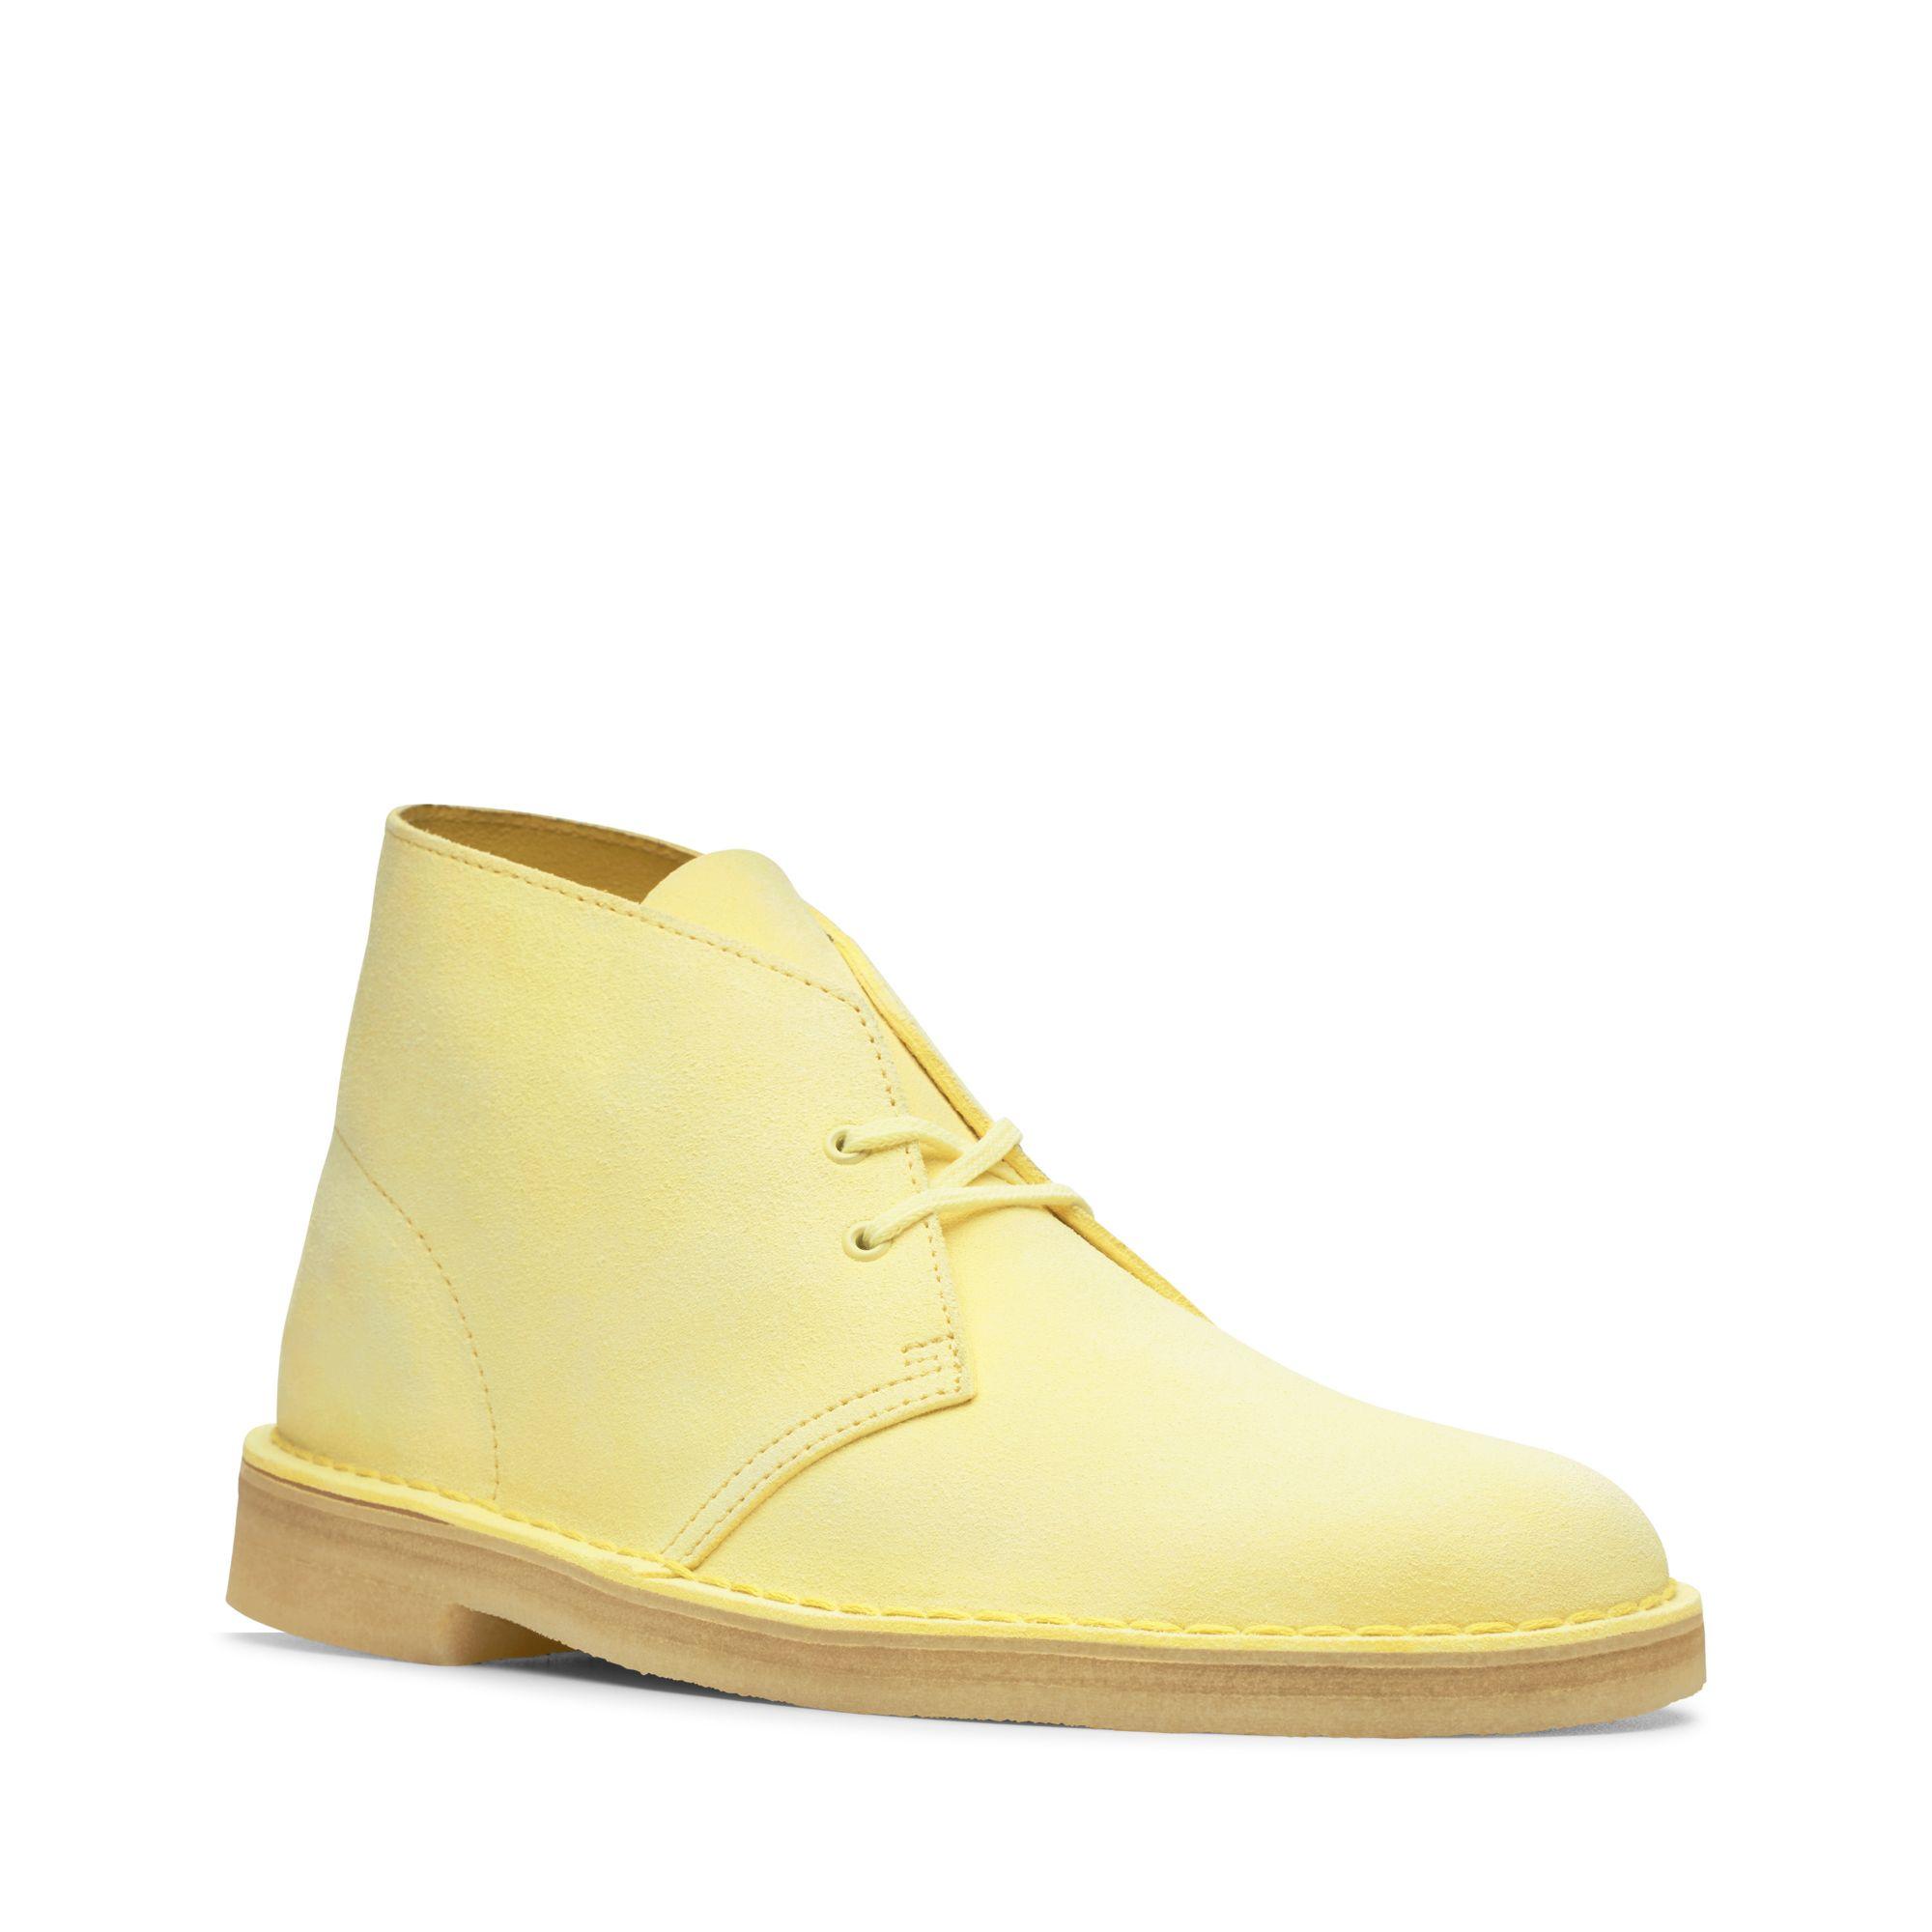 clarks desert boots yellow